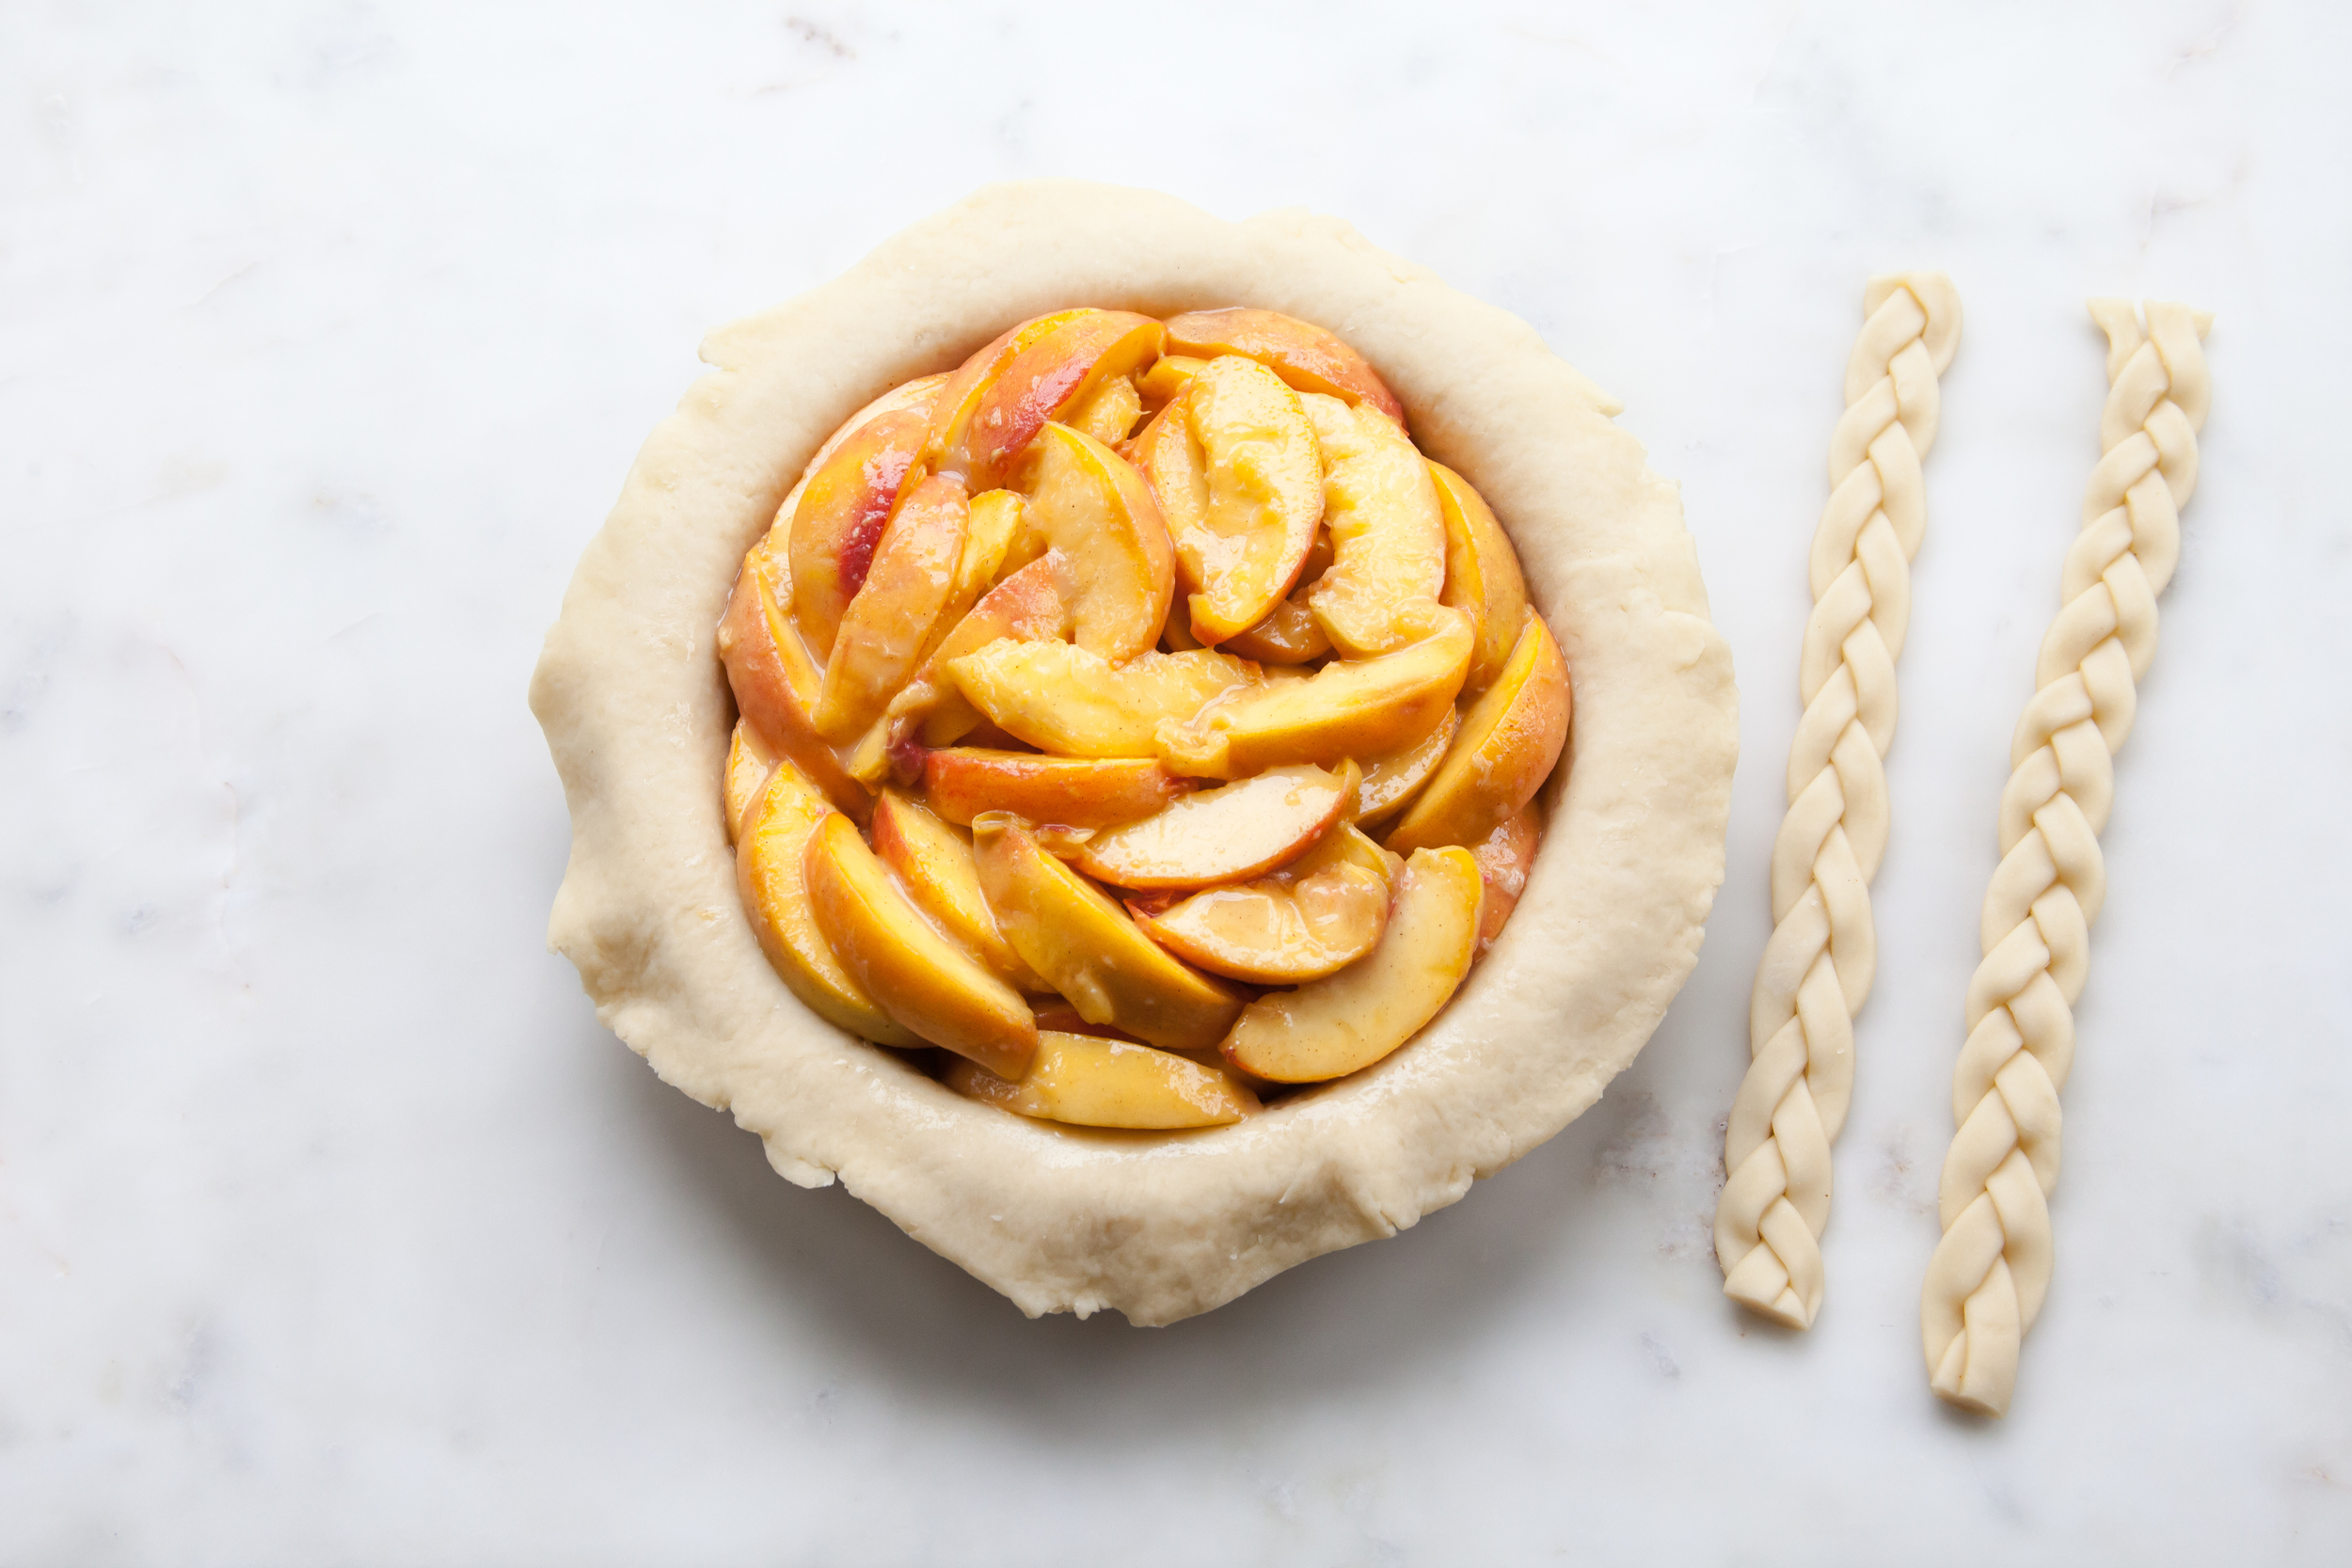 Cinnamon Peach Pie with an all-butter braid pie crust.